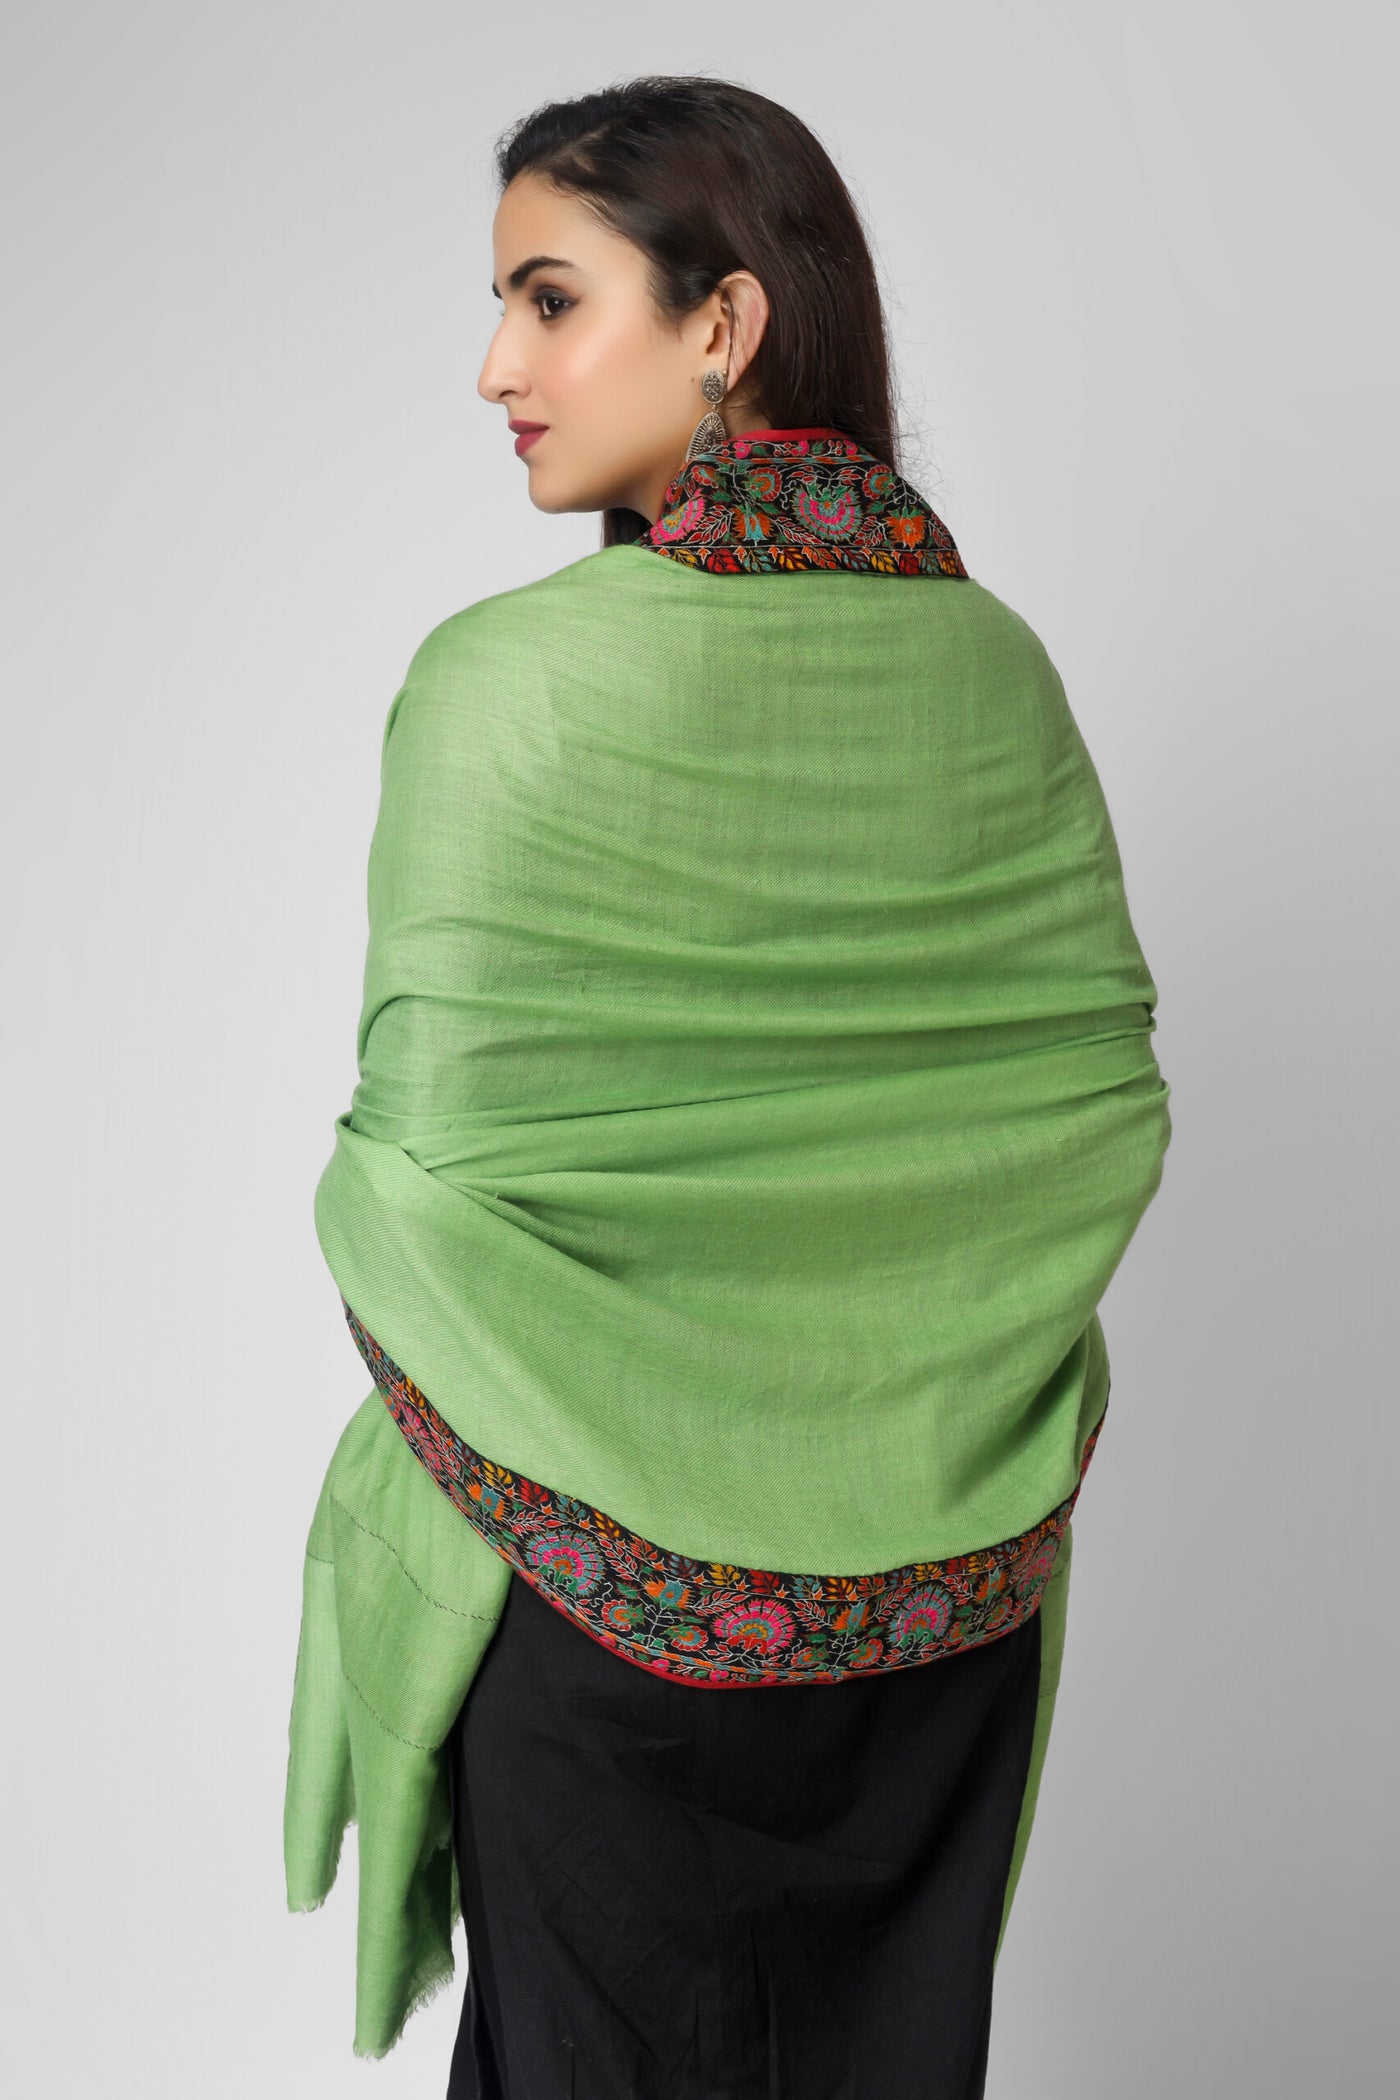 Green Pashmina patchwork dourdaar sozni shawl